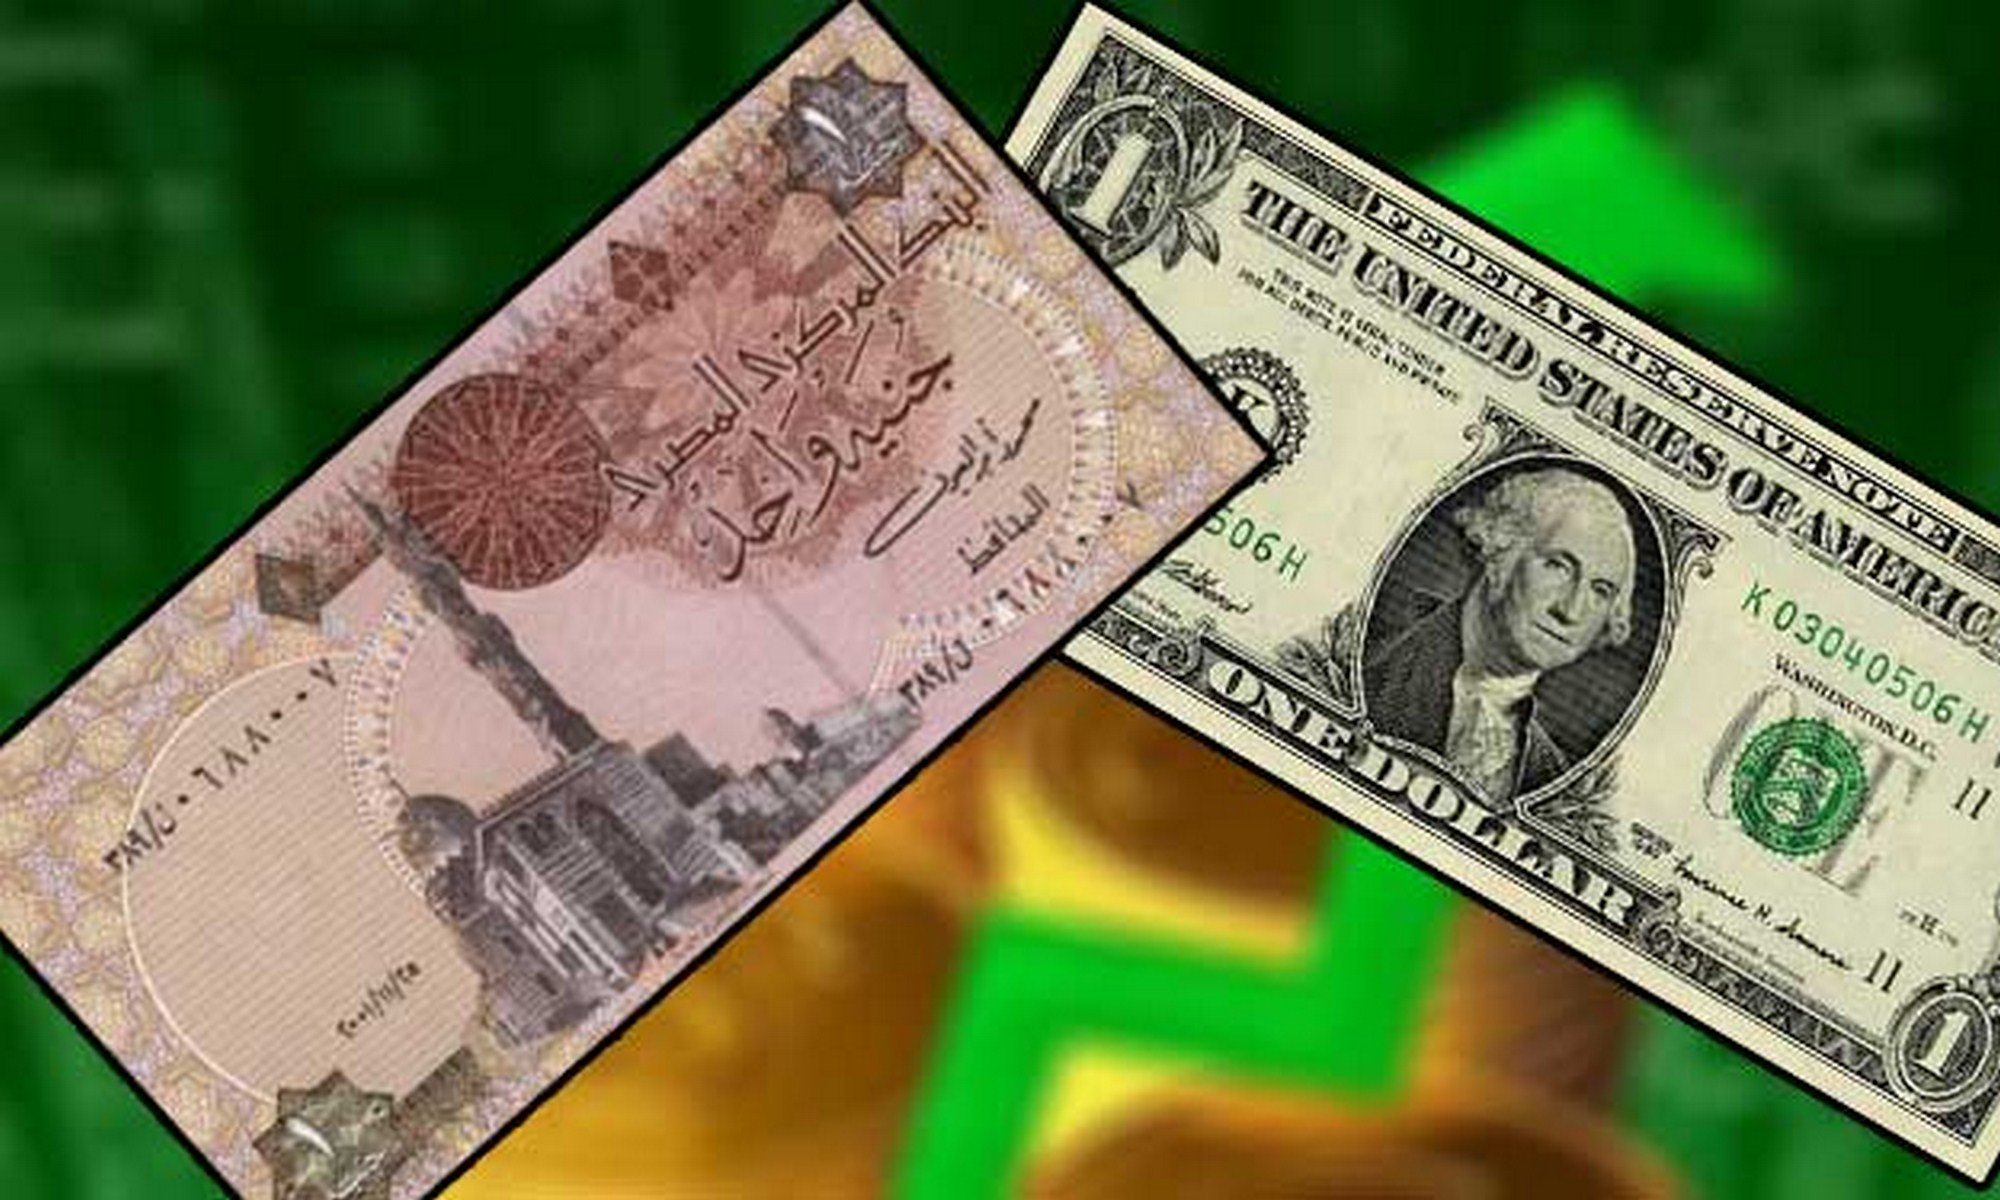   شبكة إخبارية أمريكية: الاقتصاد المصري بدأ يجني ثمار تحرير سعر الصرف